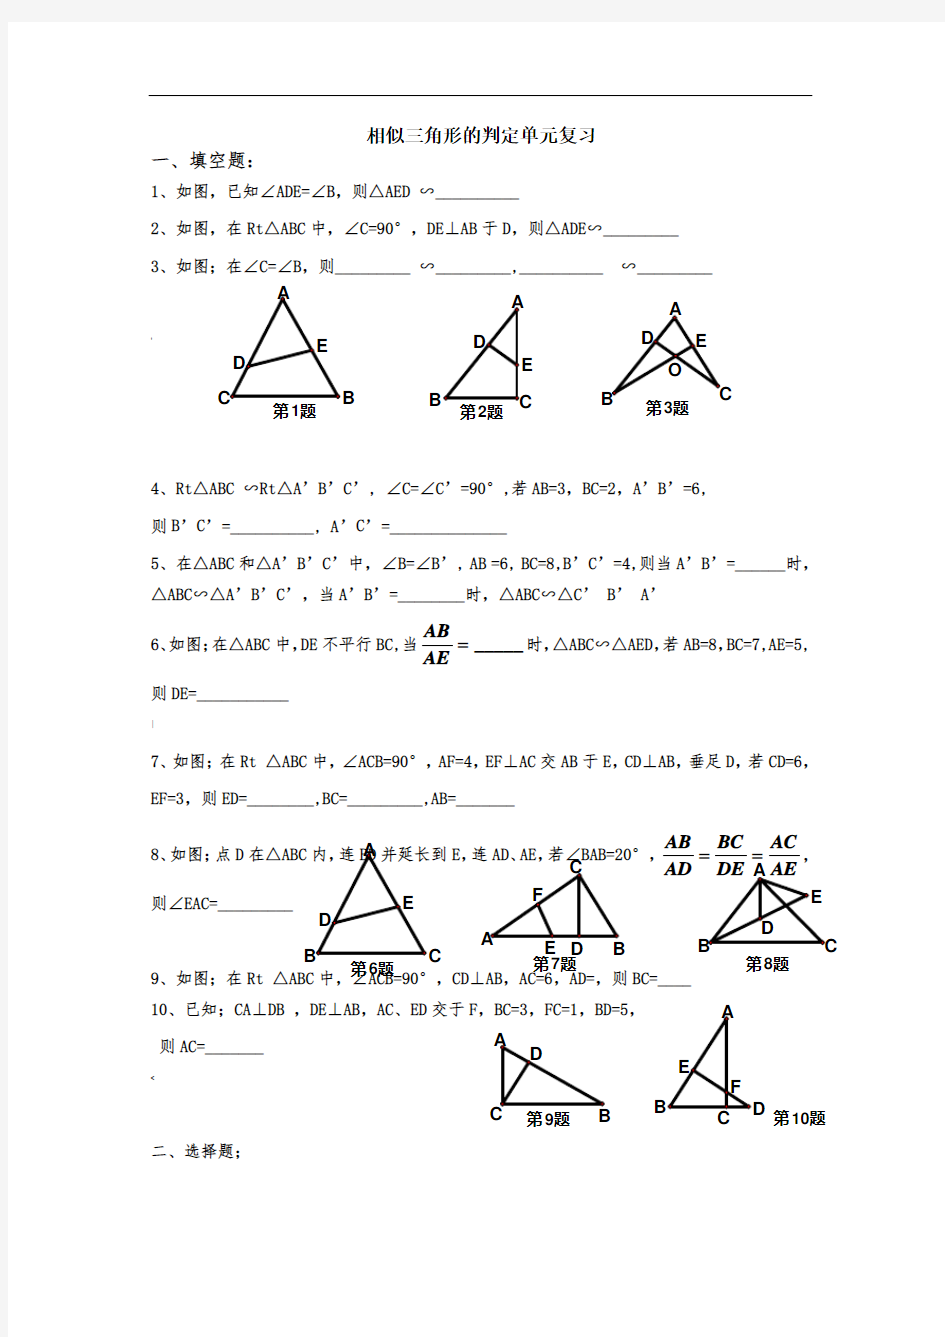 (经典)相似三角形判定习题[1]